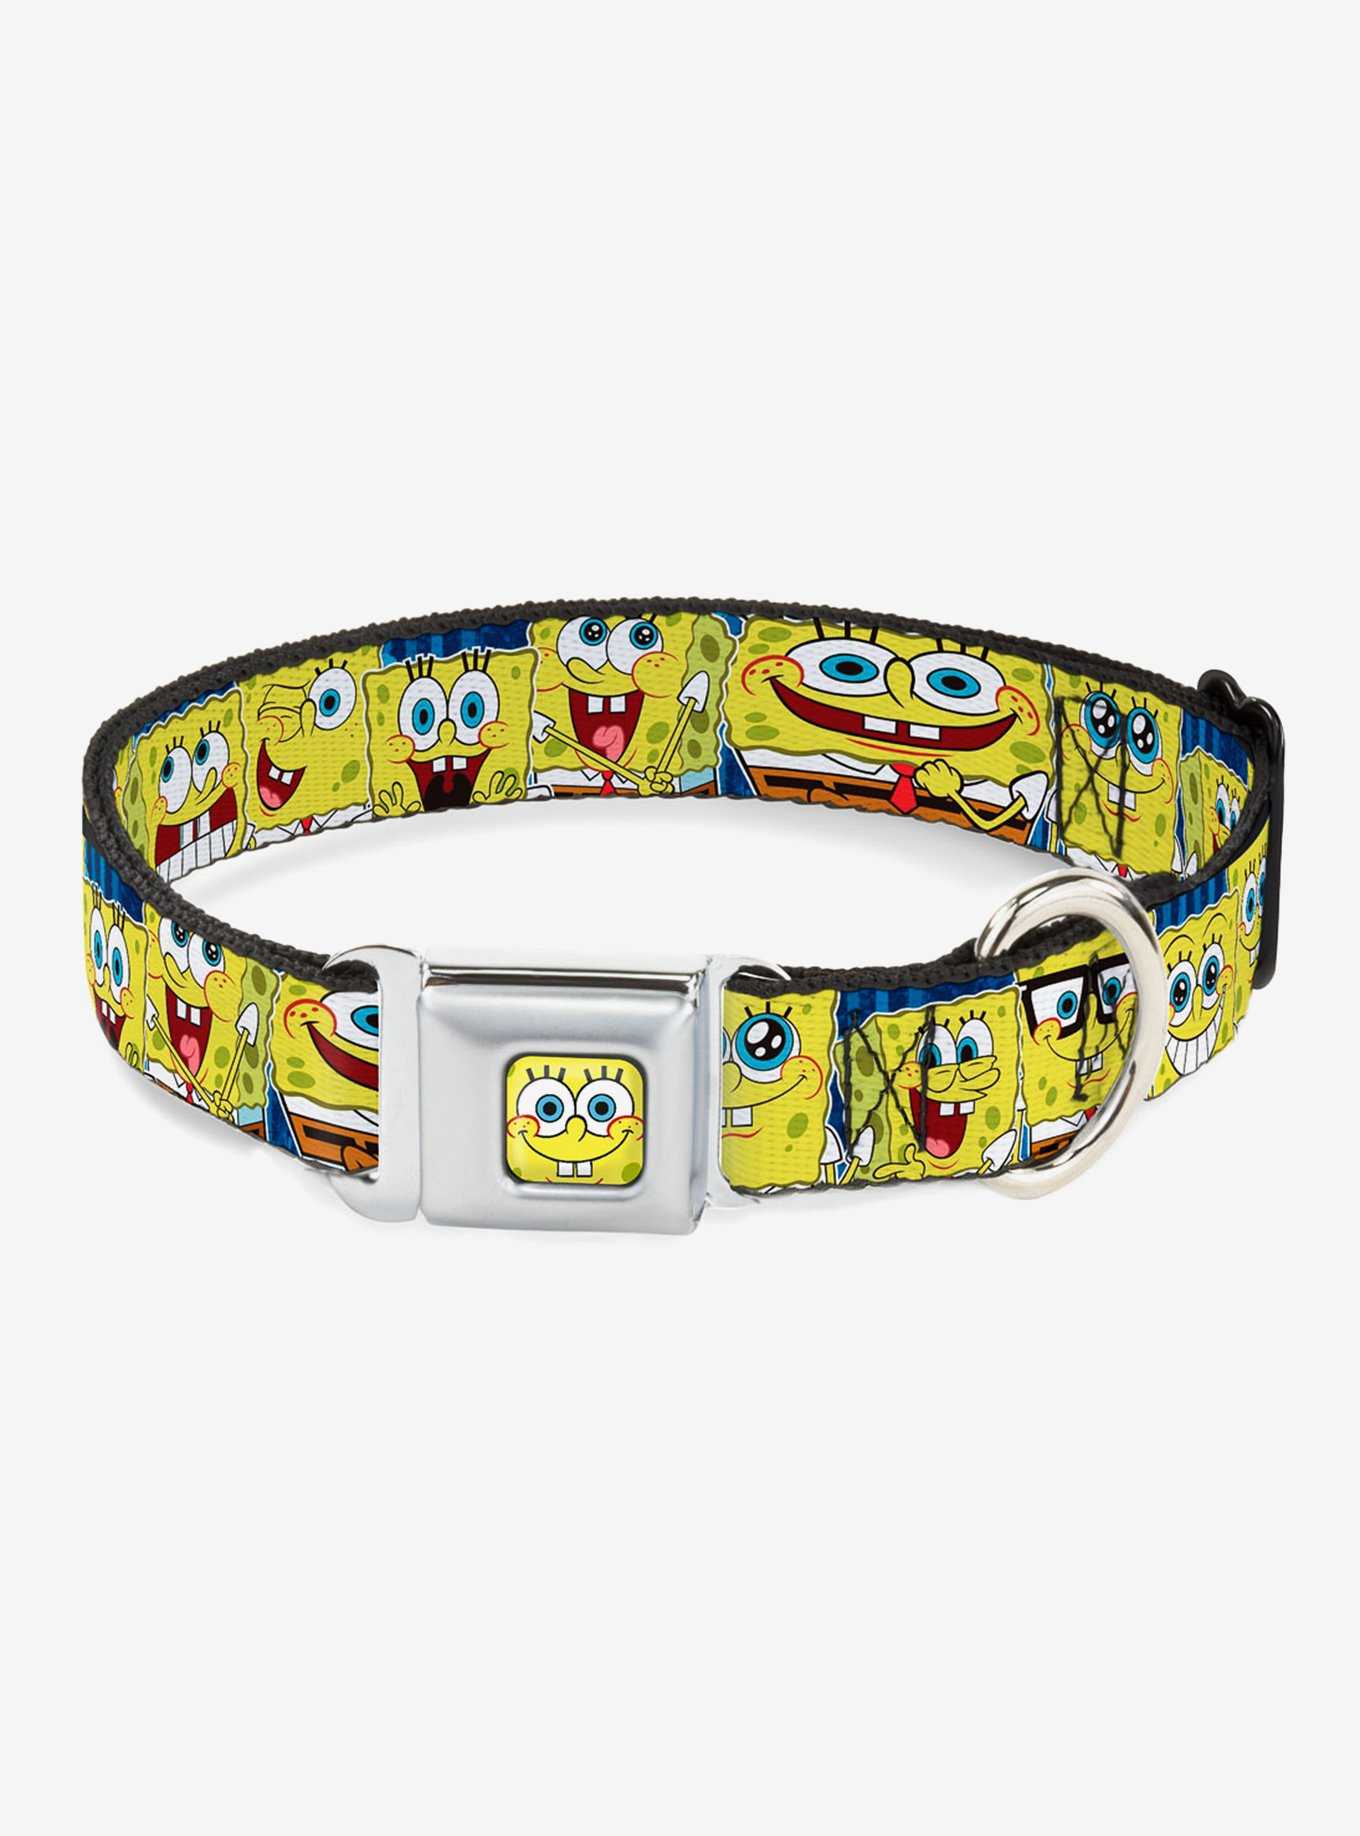 Spongebob Squarepants Expressions Dog Collar Seatbelt Buckle, , hi-res